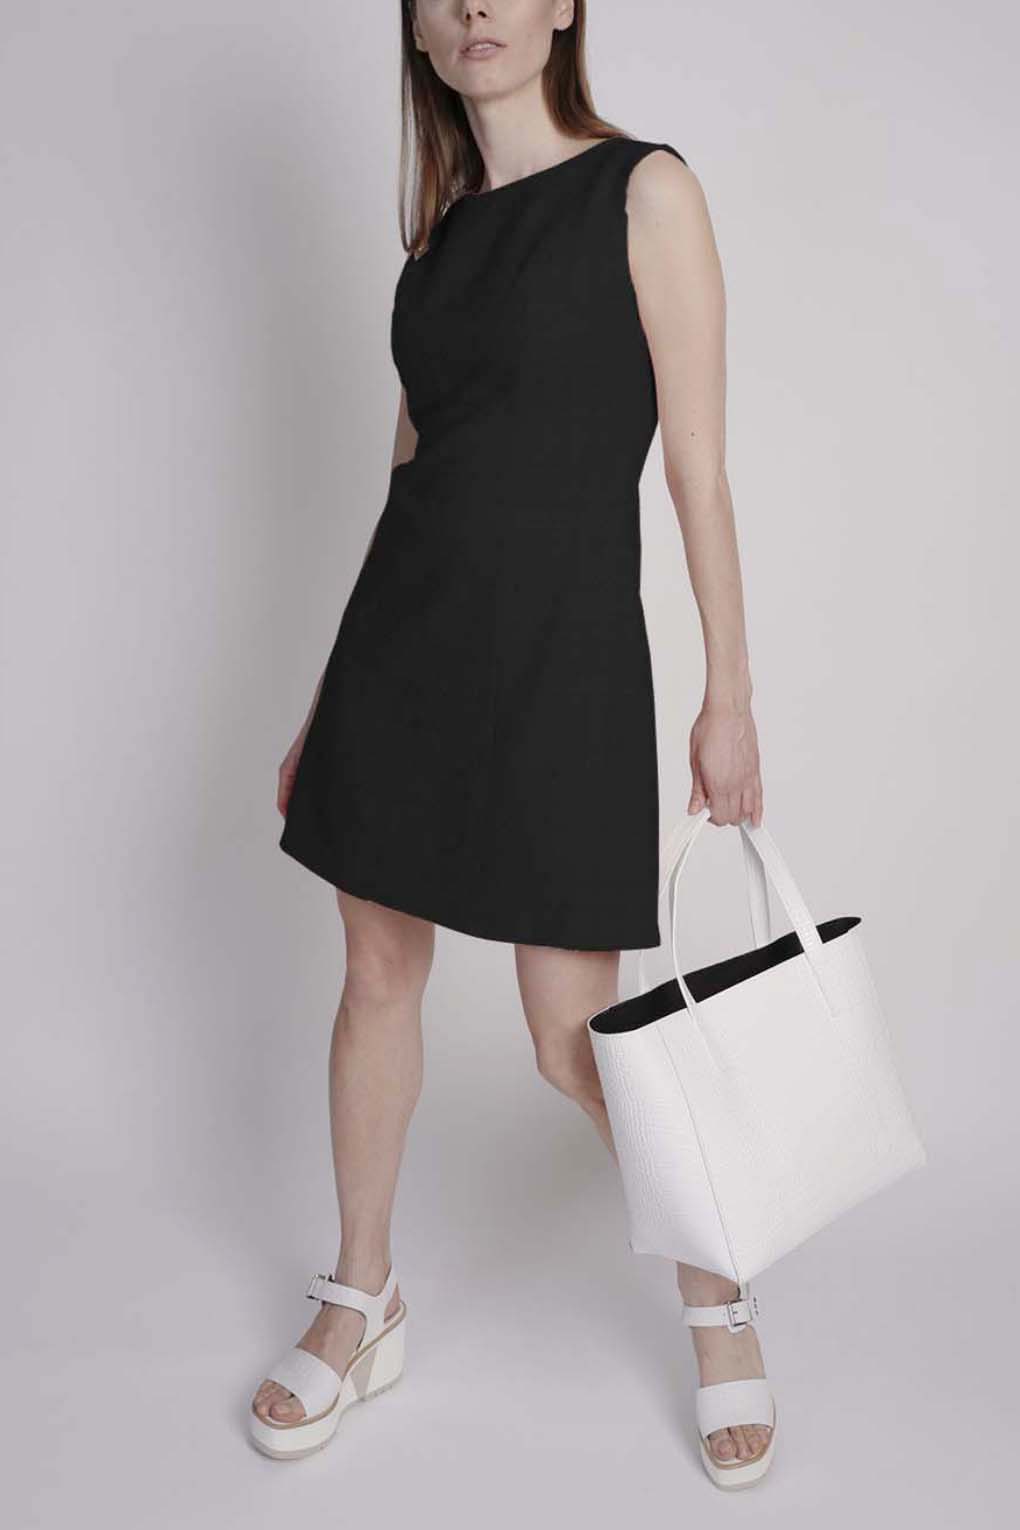 фото Платье женское paola ray pr120-3085 черное l